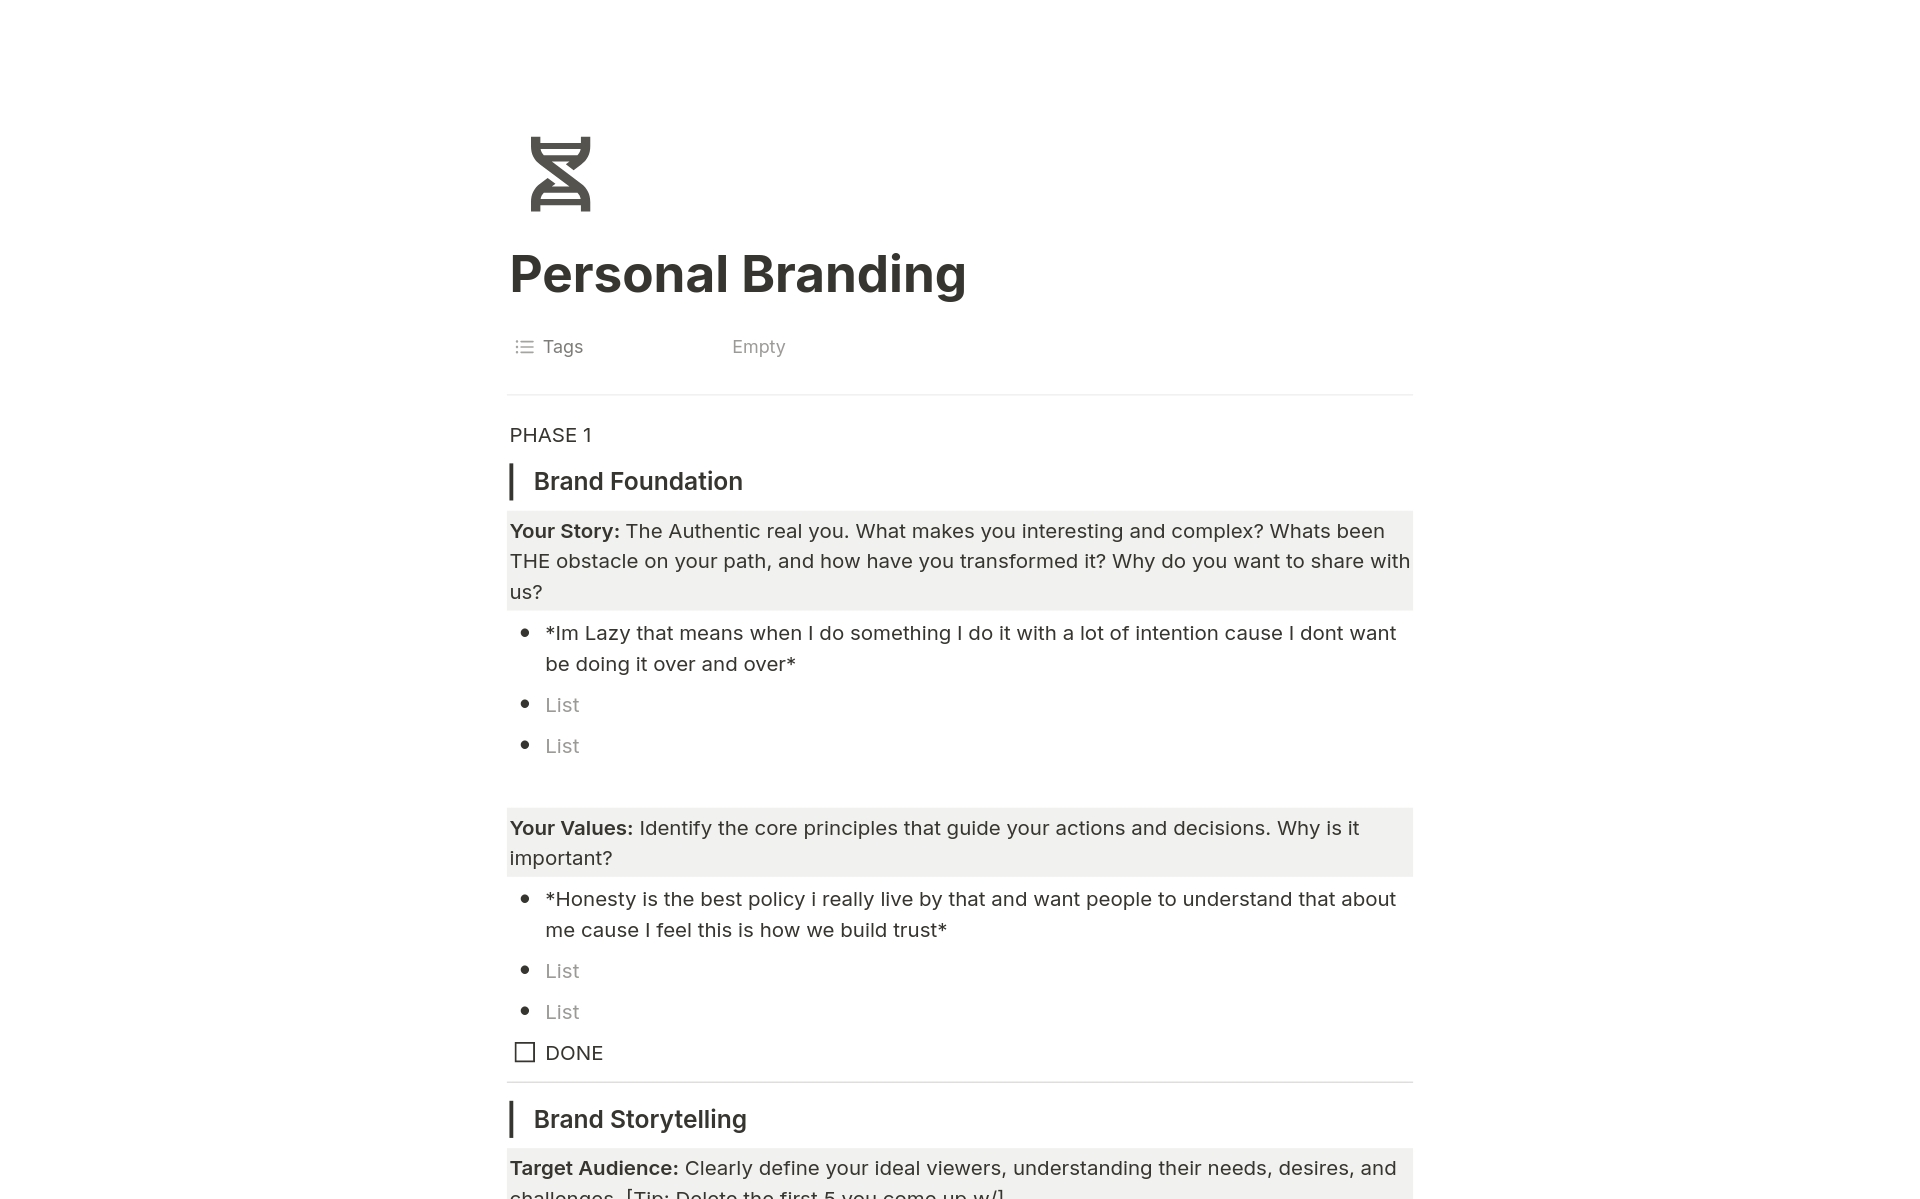 Vista previa de una plantilla para Personal Branding